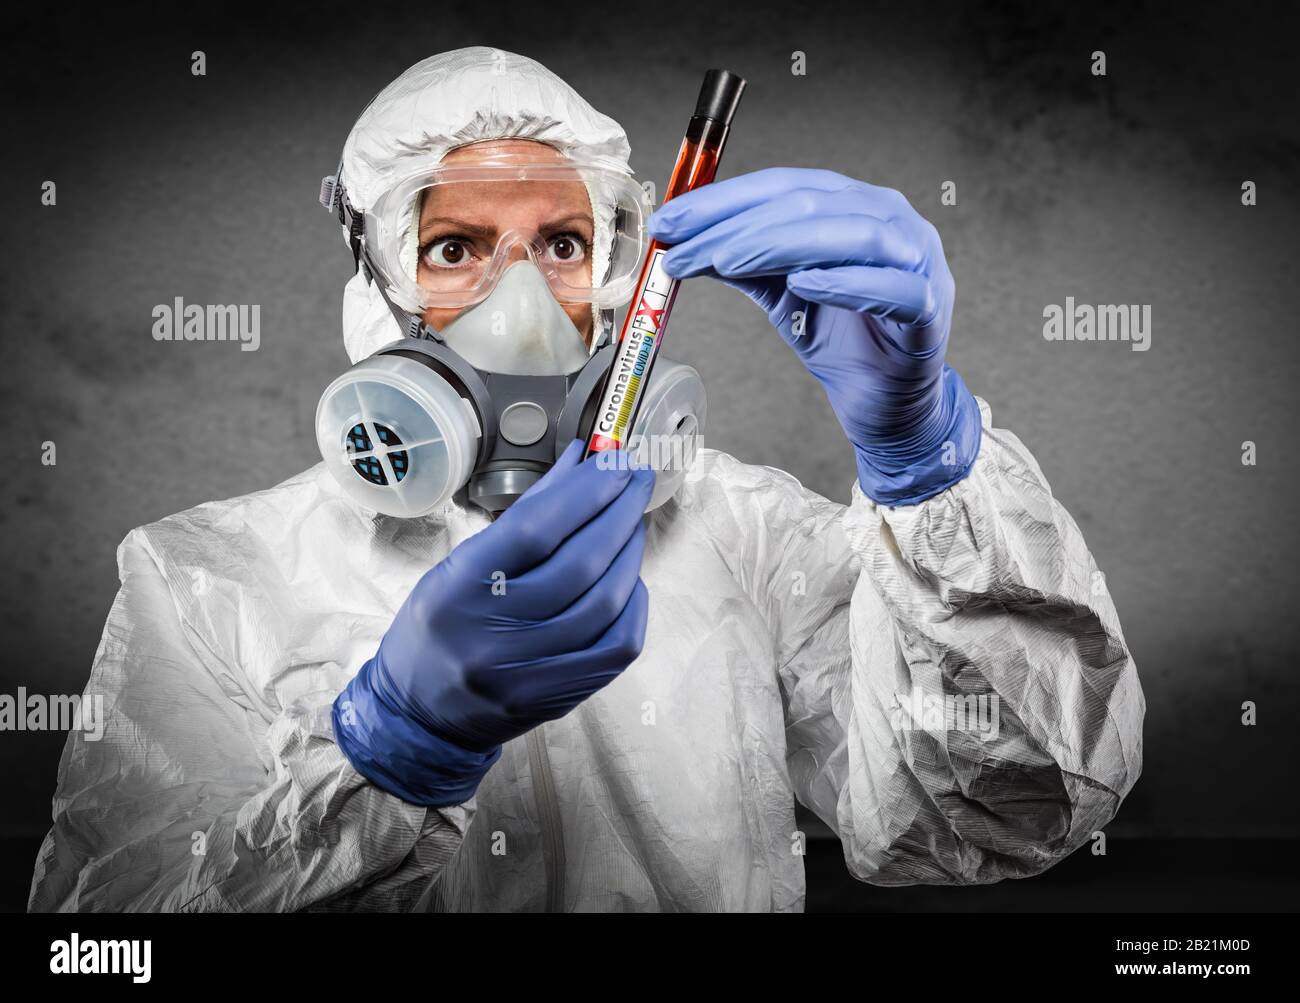 Female Doctor or Nurse In Hazmat Gear Holding Positive Coronavirus Test Tube. Stock Photo